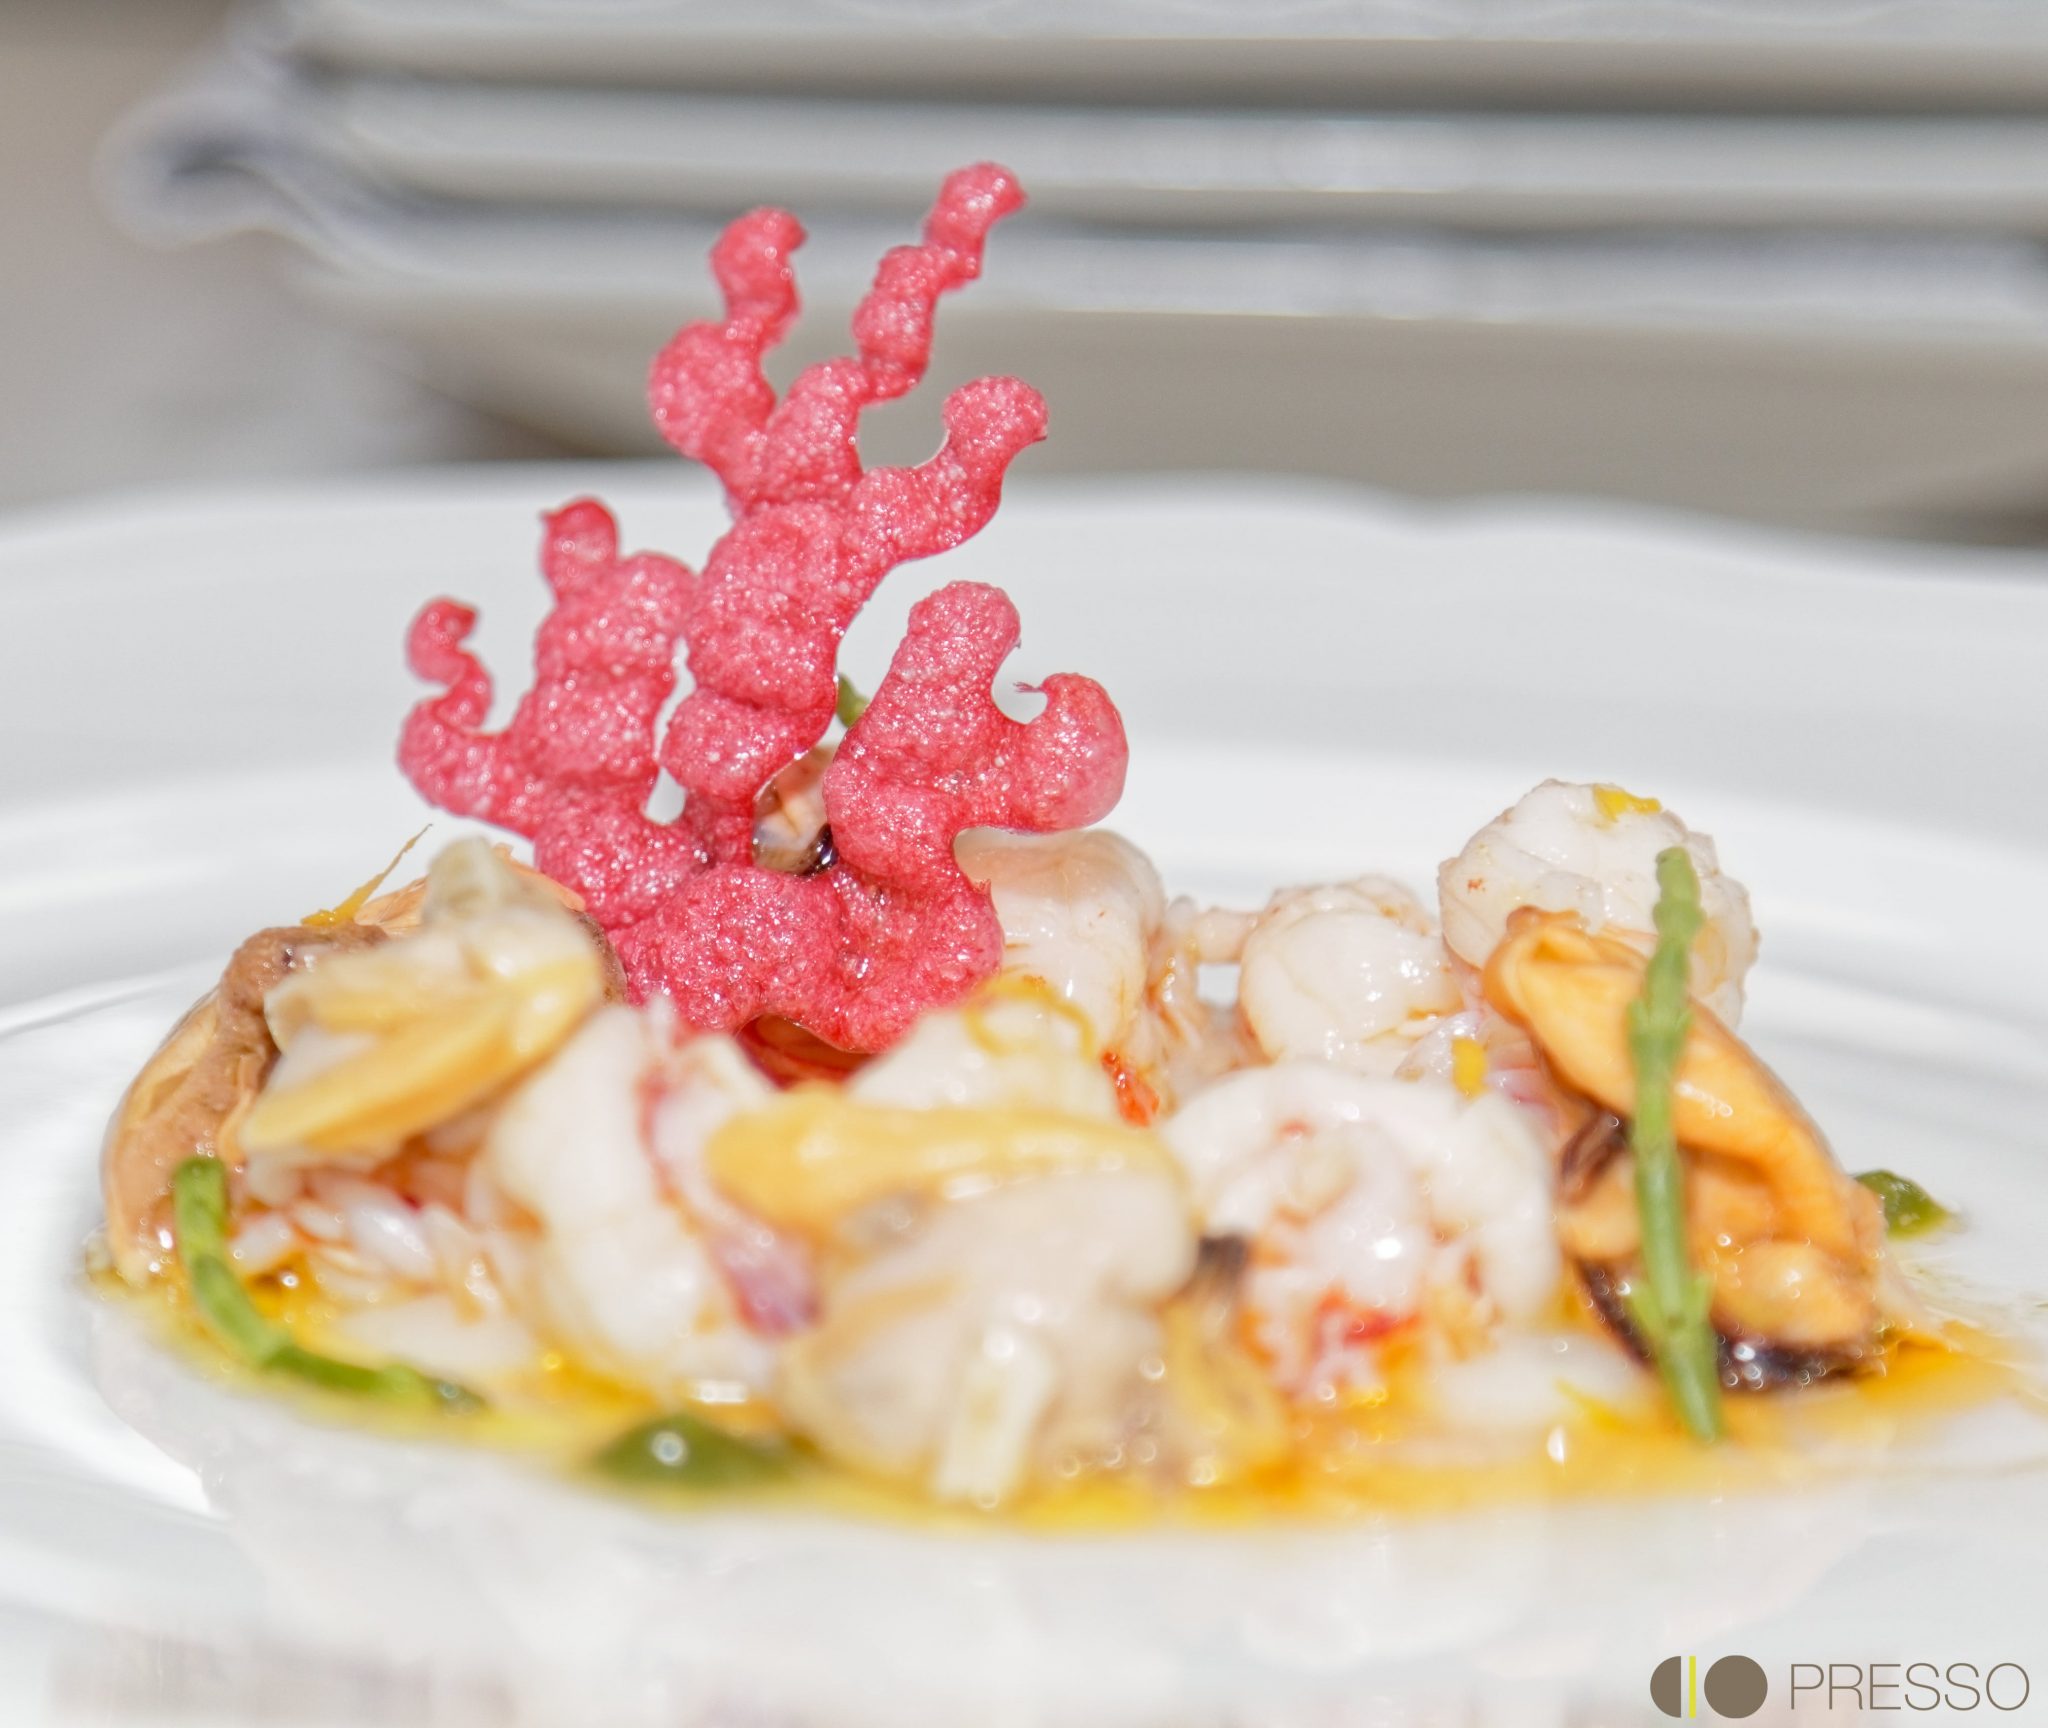 Milano: il ristorante “Il Moro” si presenta a “Presso”